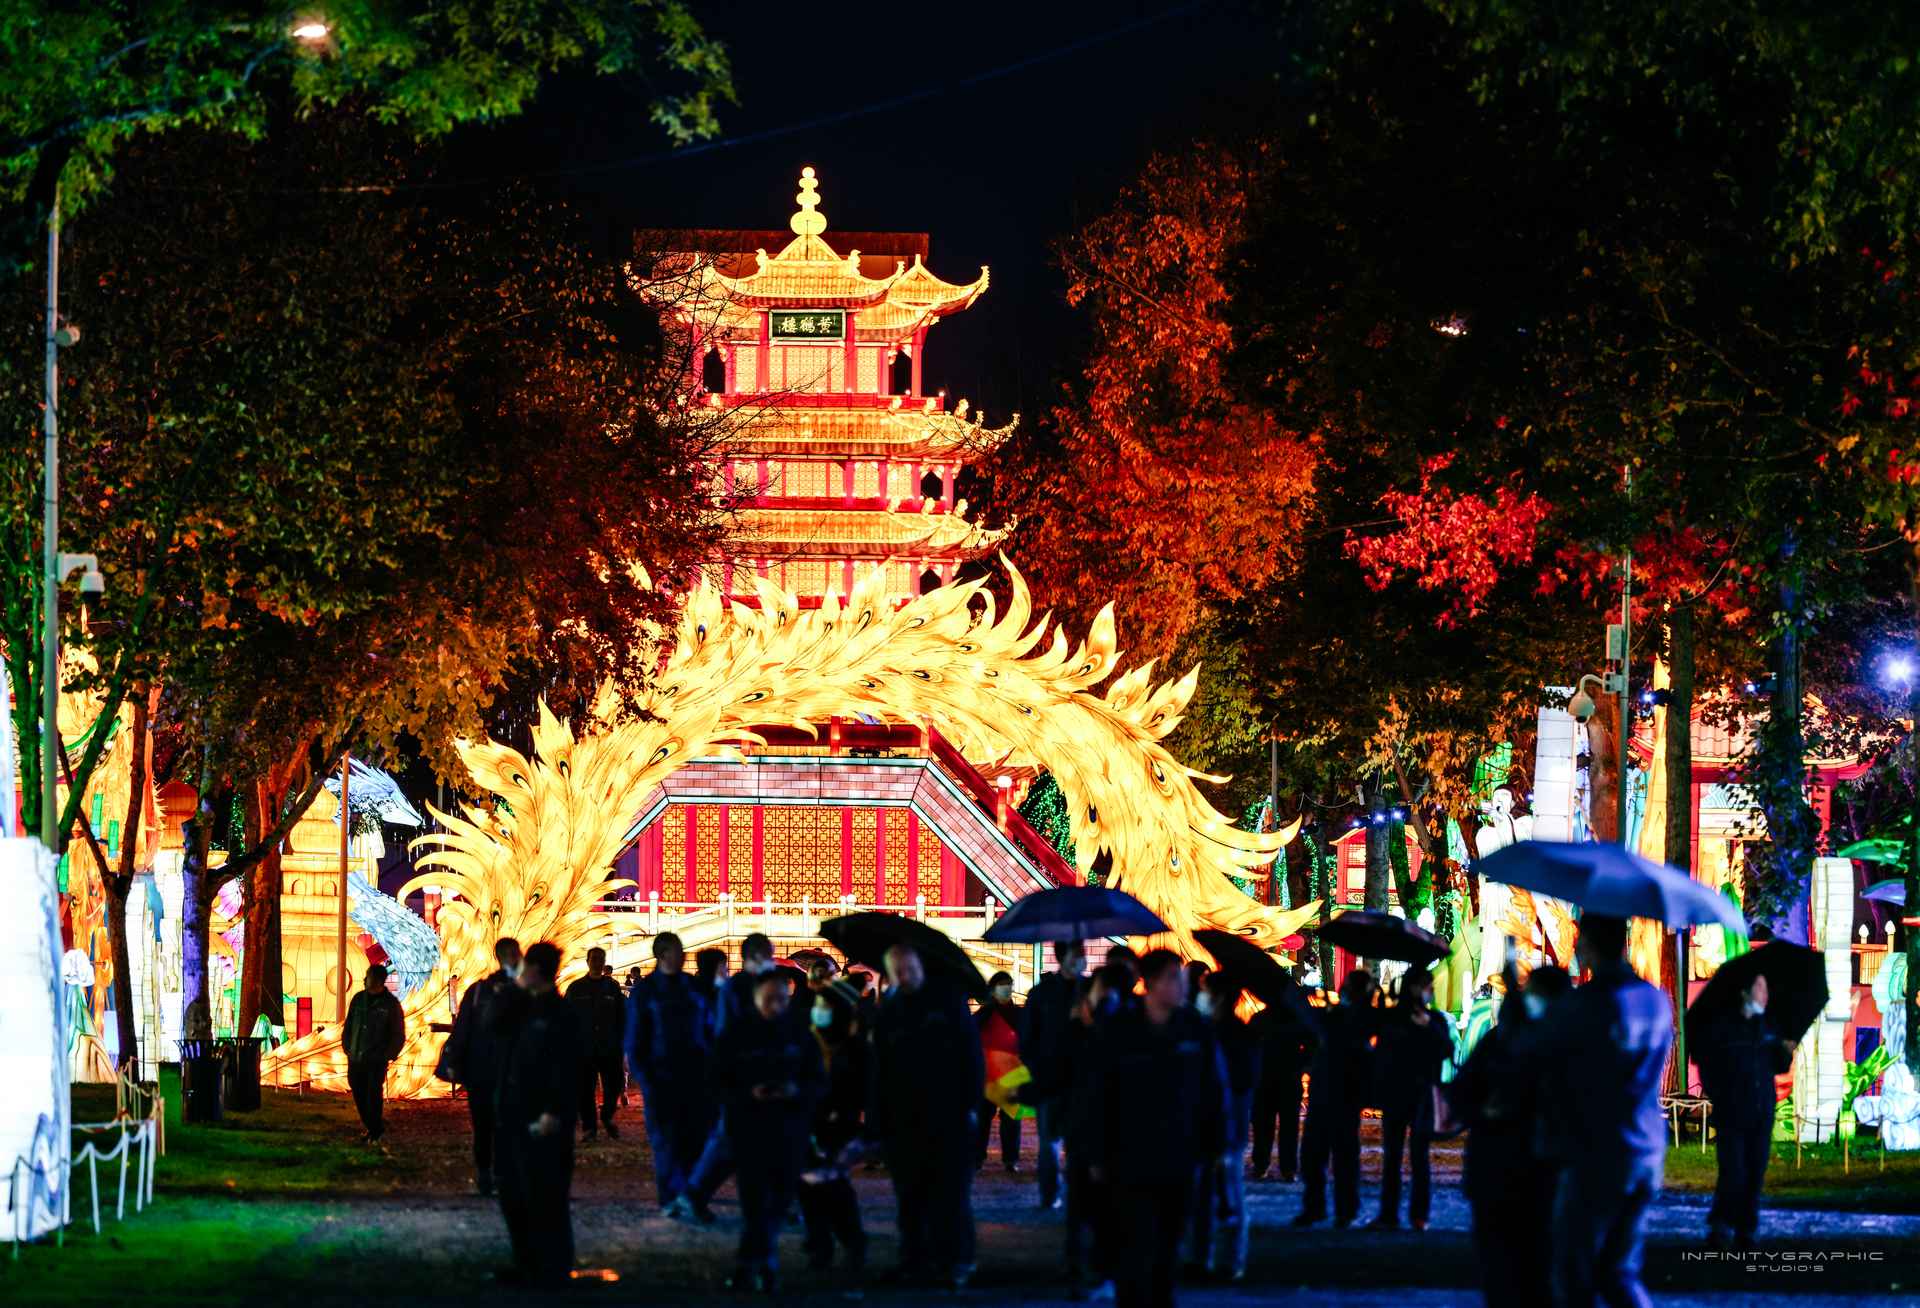 À Montauban, le Festival des Lanternes nous emmène en Chine en totale autonomie énergétique